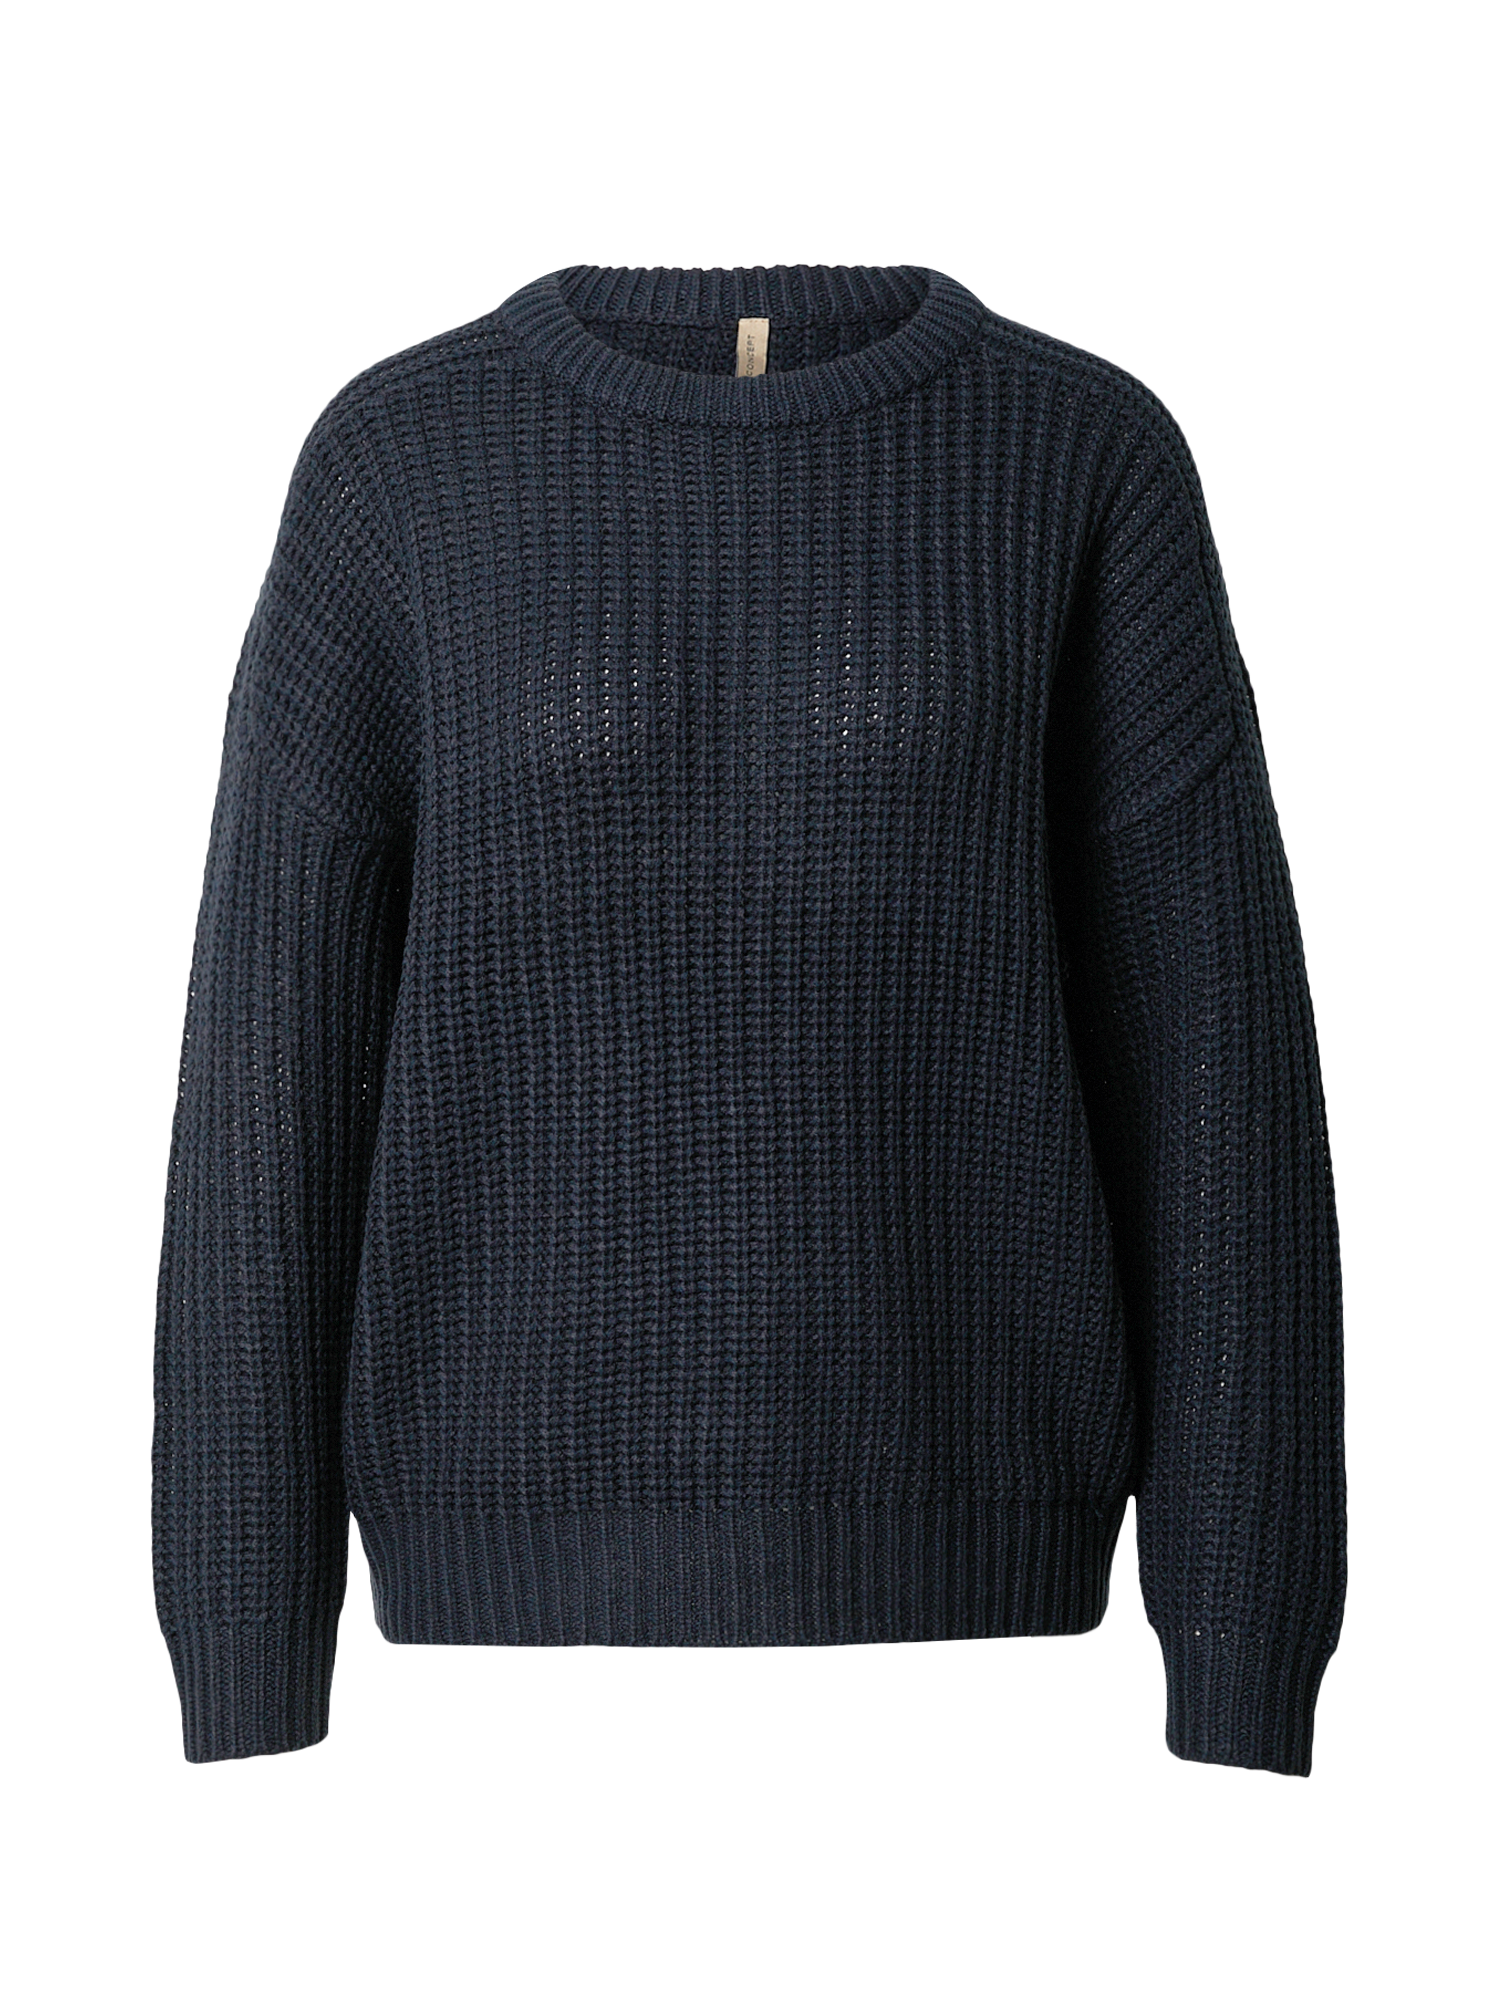 Odzież Swetry & dzianina Soyaconcept Sweter REMONE 16 w kolorze Granatowym 